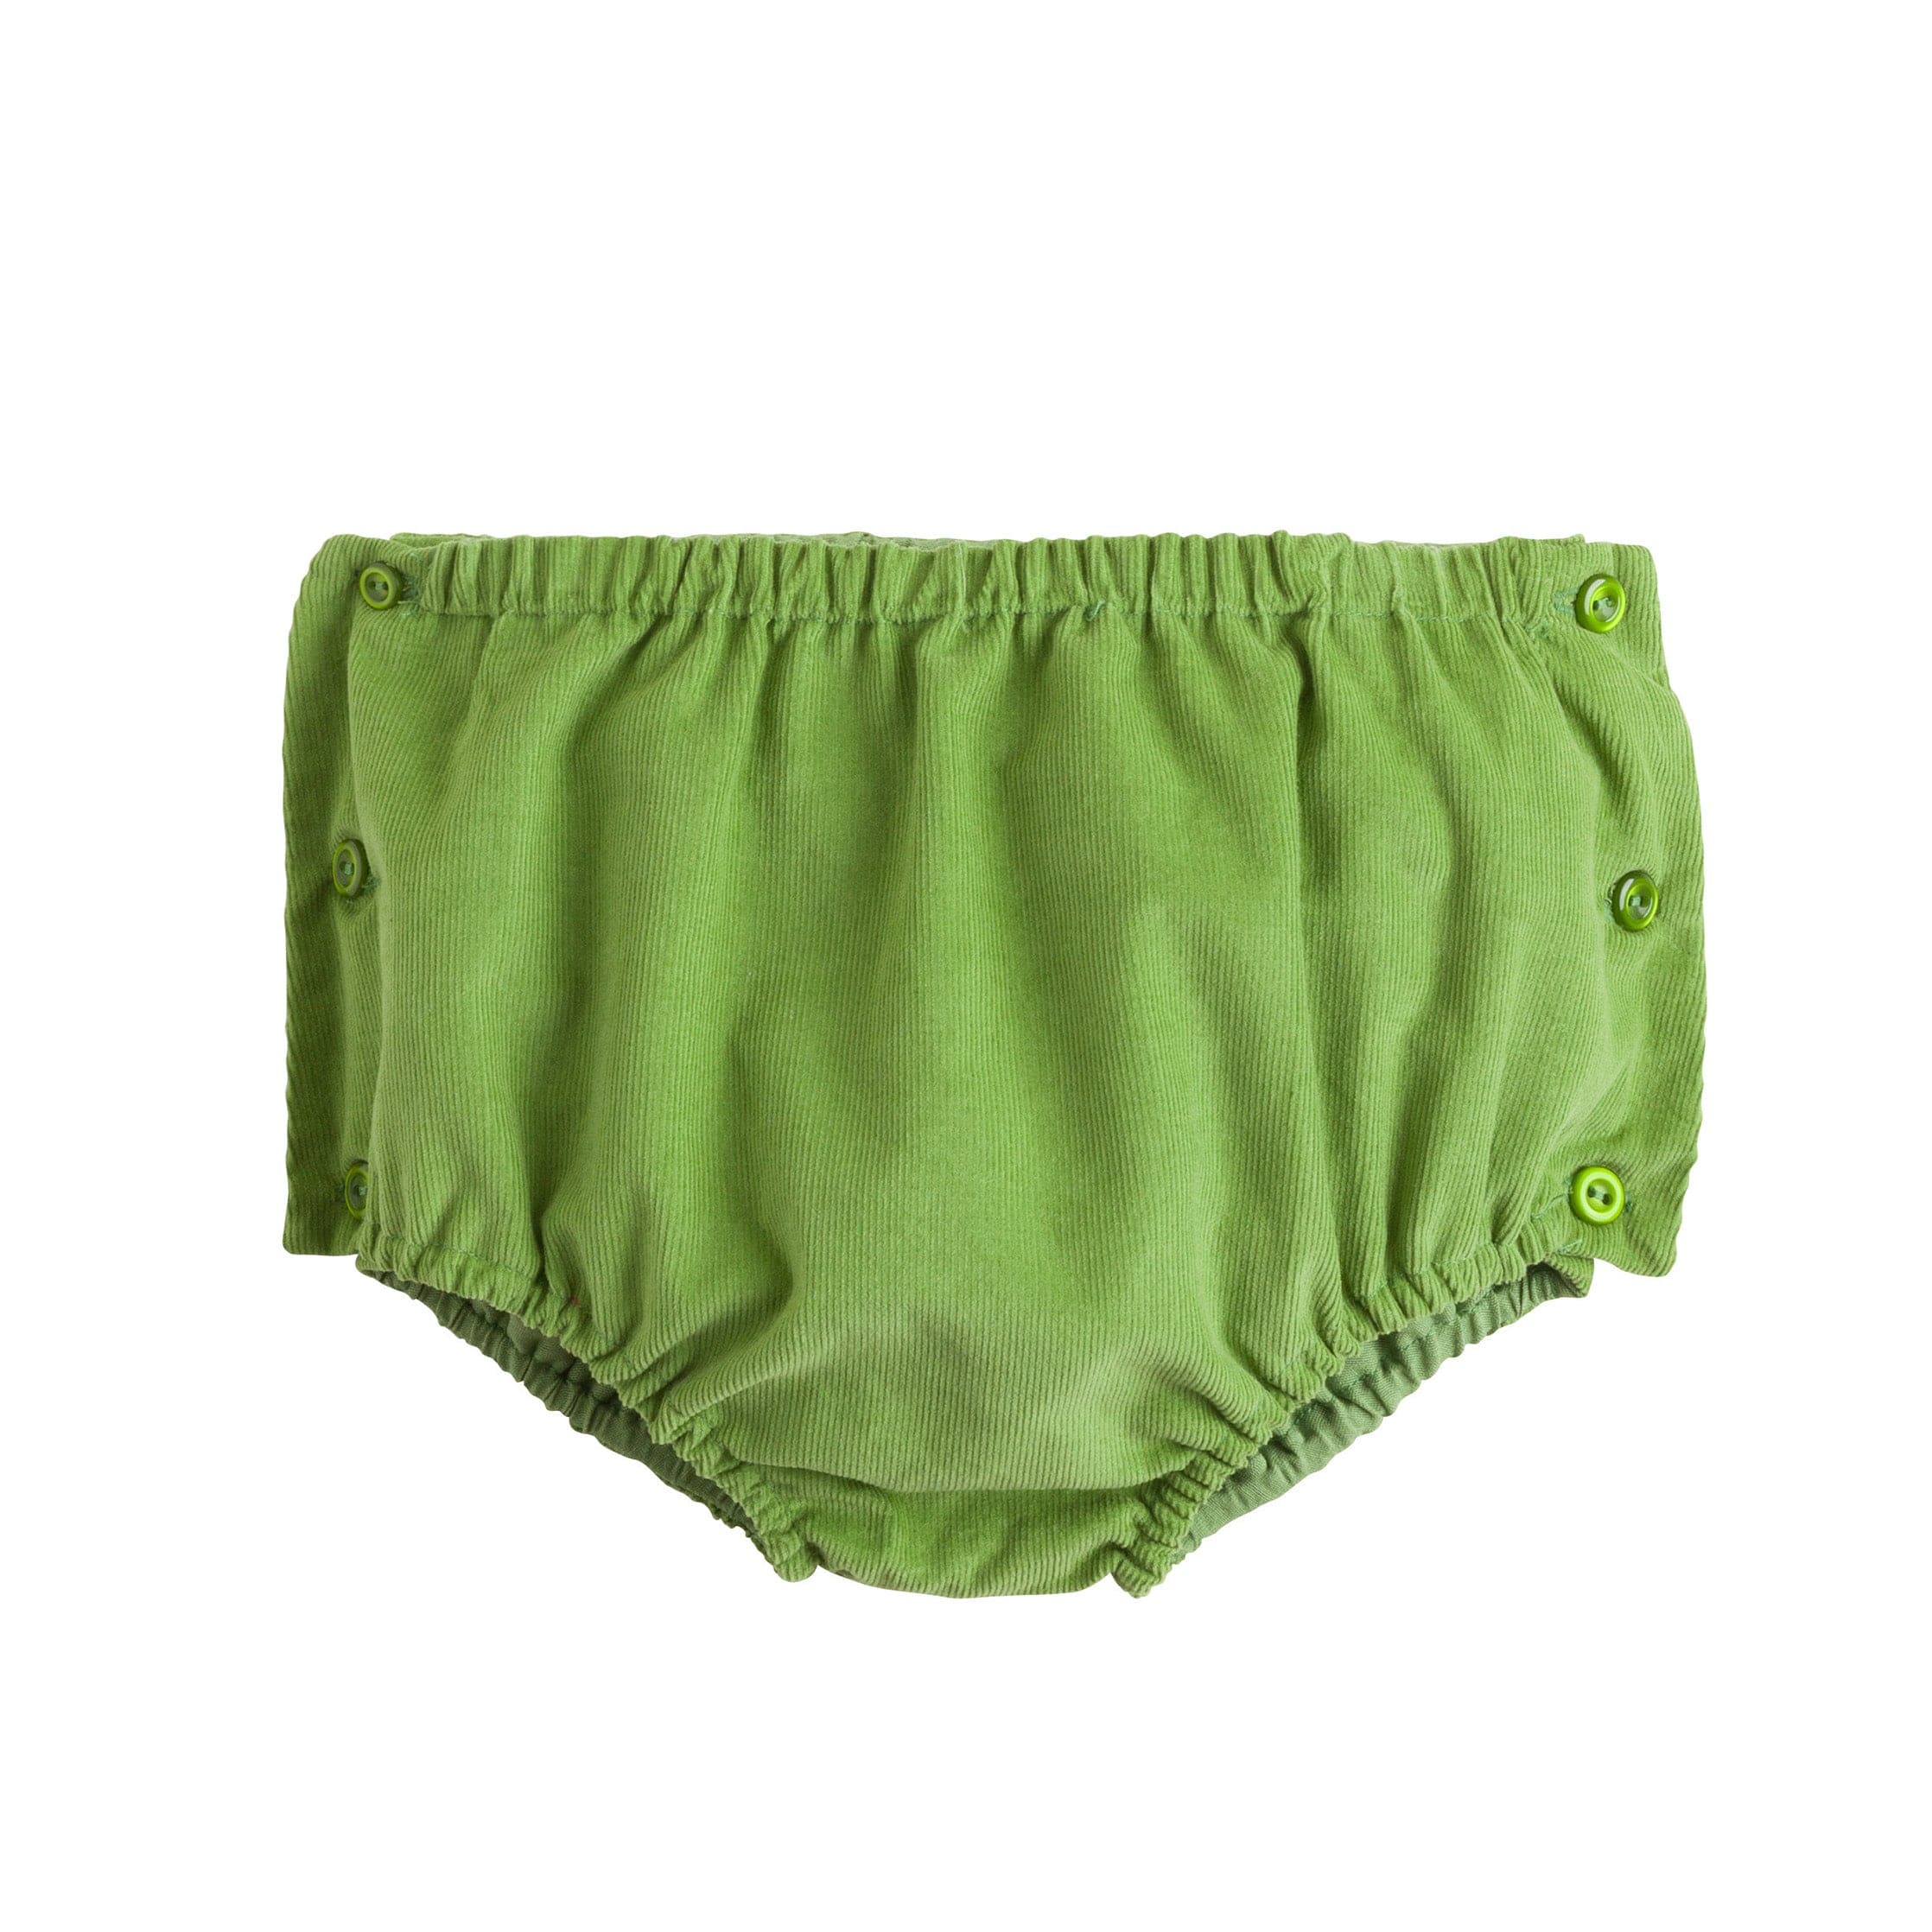 Outflits Ladies Inner Wear Printed Panties (LT colours) - Pack Of 6 (L